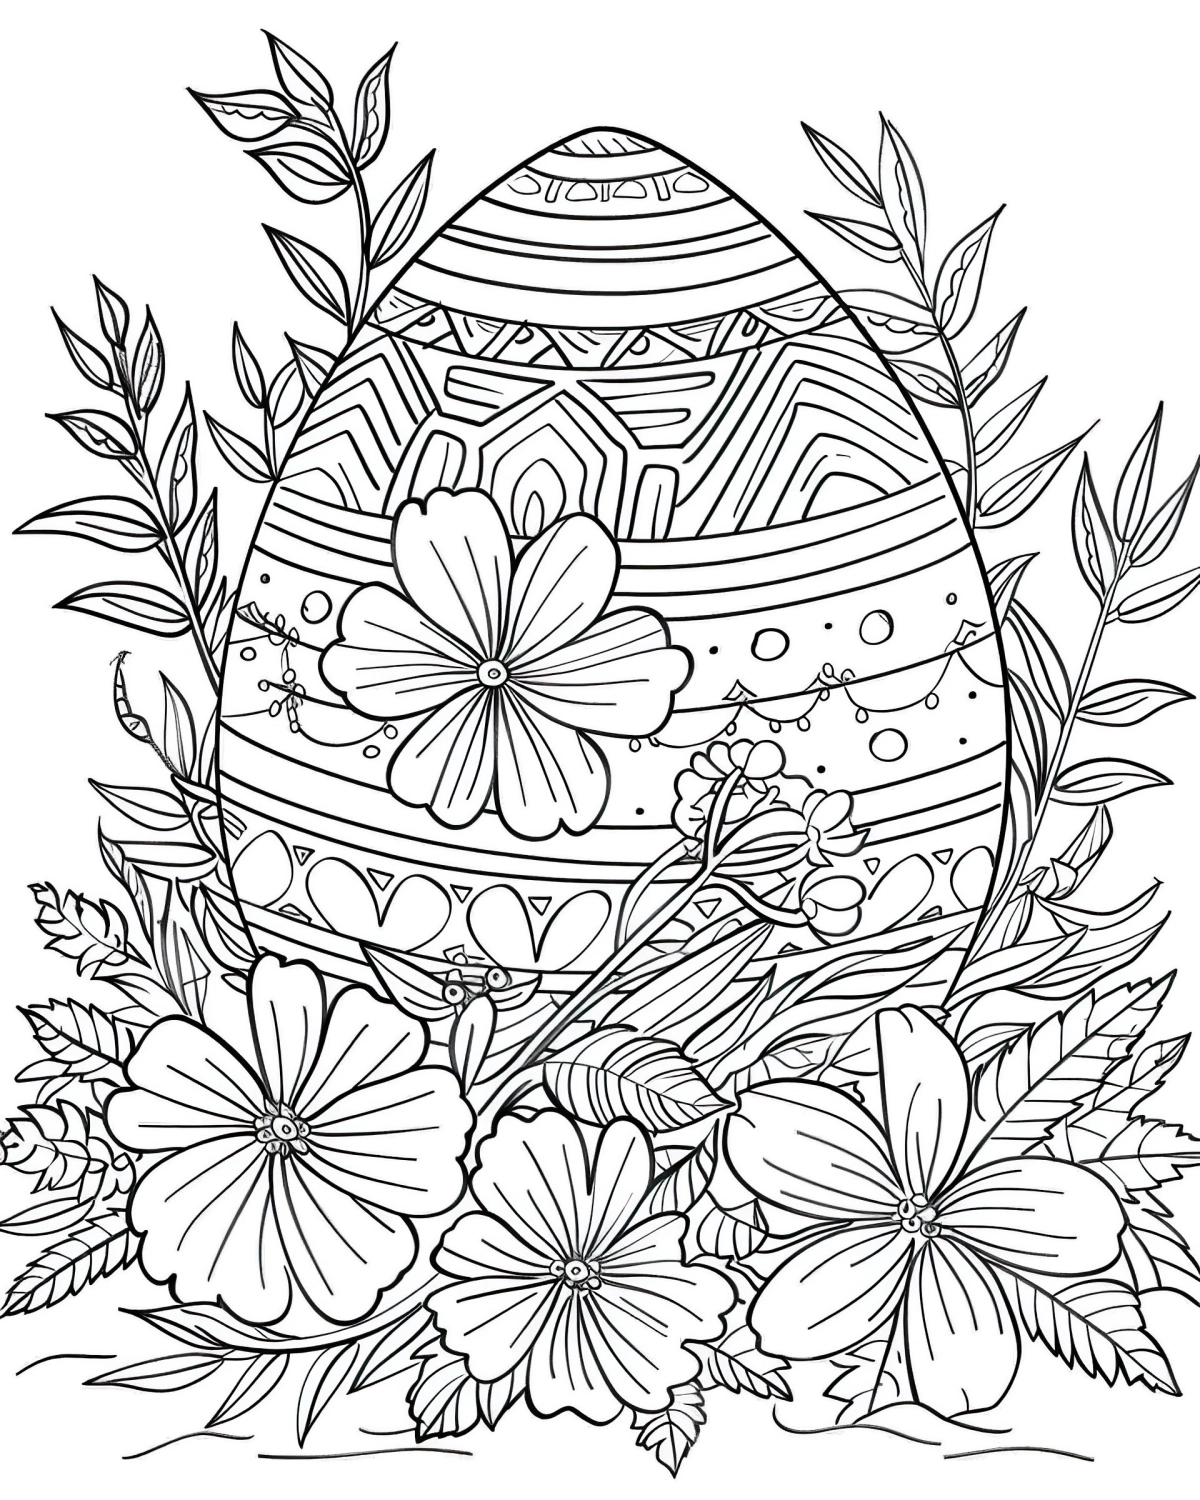 coloriage oeuf de paques pour adultes motifs geometriques fleurs grandes lignes